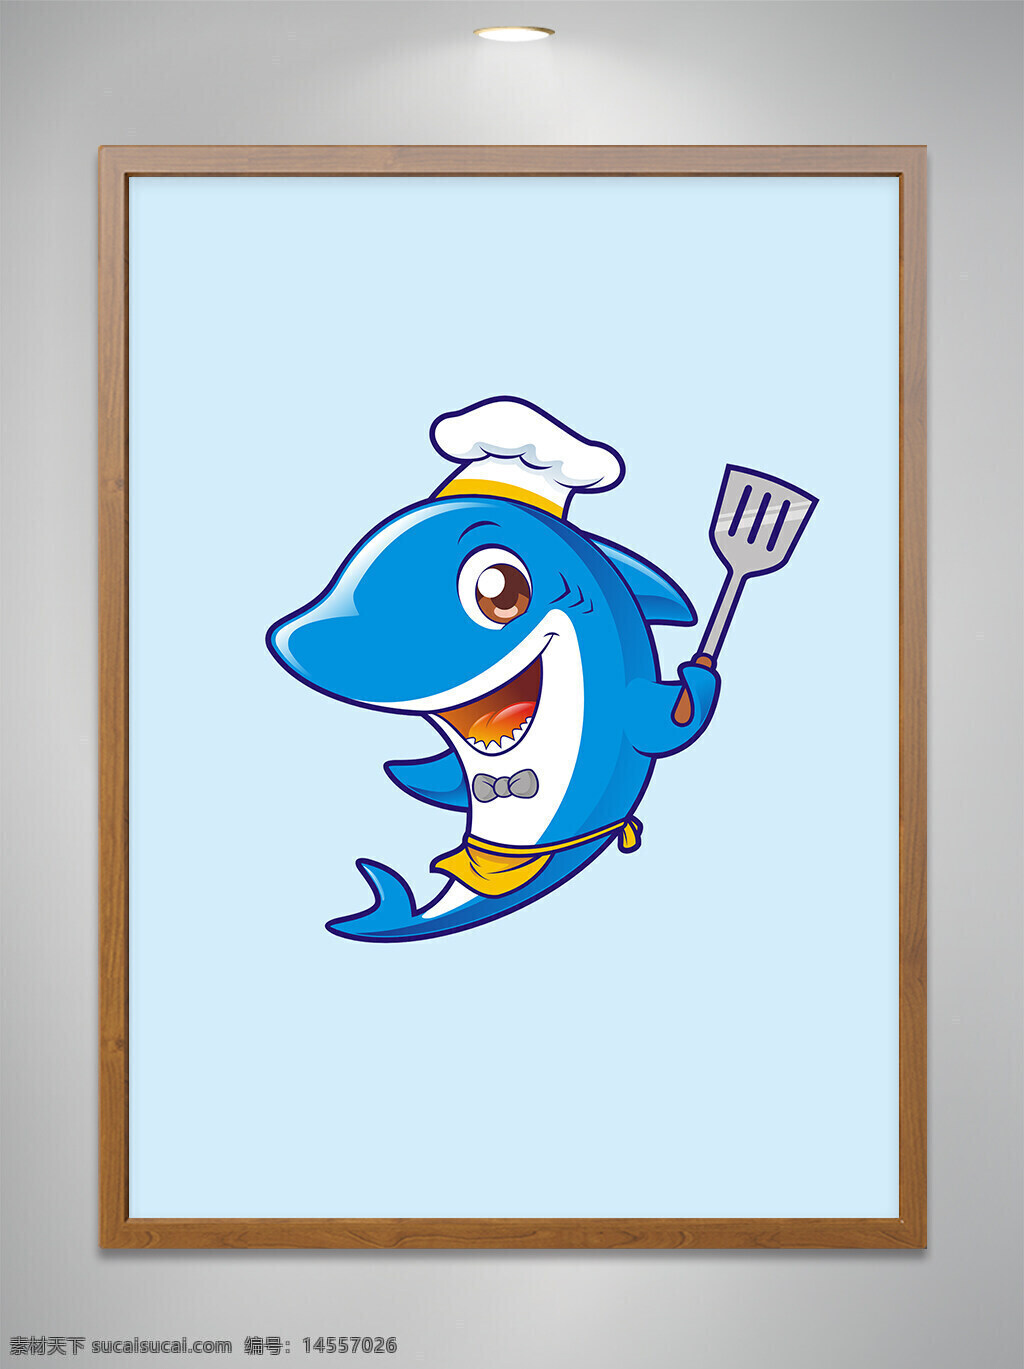 卡通原创 卡通吉祥物 卡通动物 卡通可爱小鲨鱼 卡通可爱小鲨鱼厨师 卡通可爱小鲨鱼厨师拿锅铲 餐饮 cdr矢量图